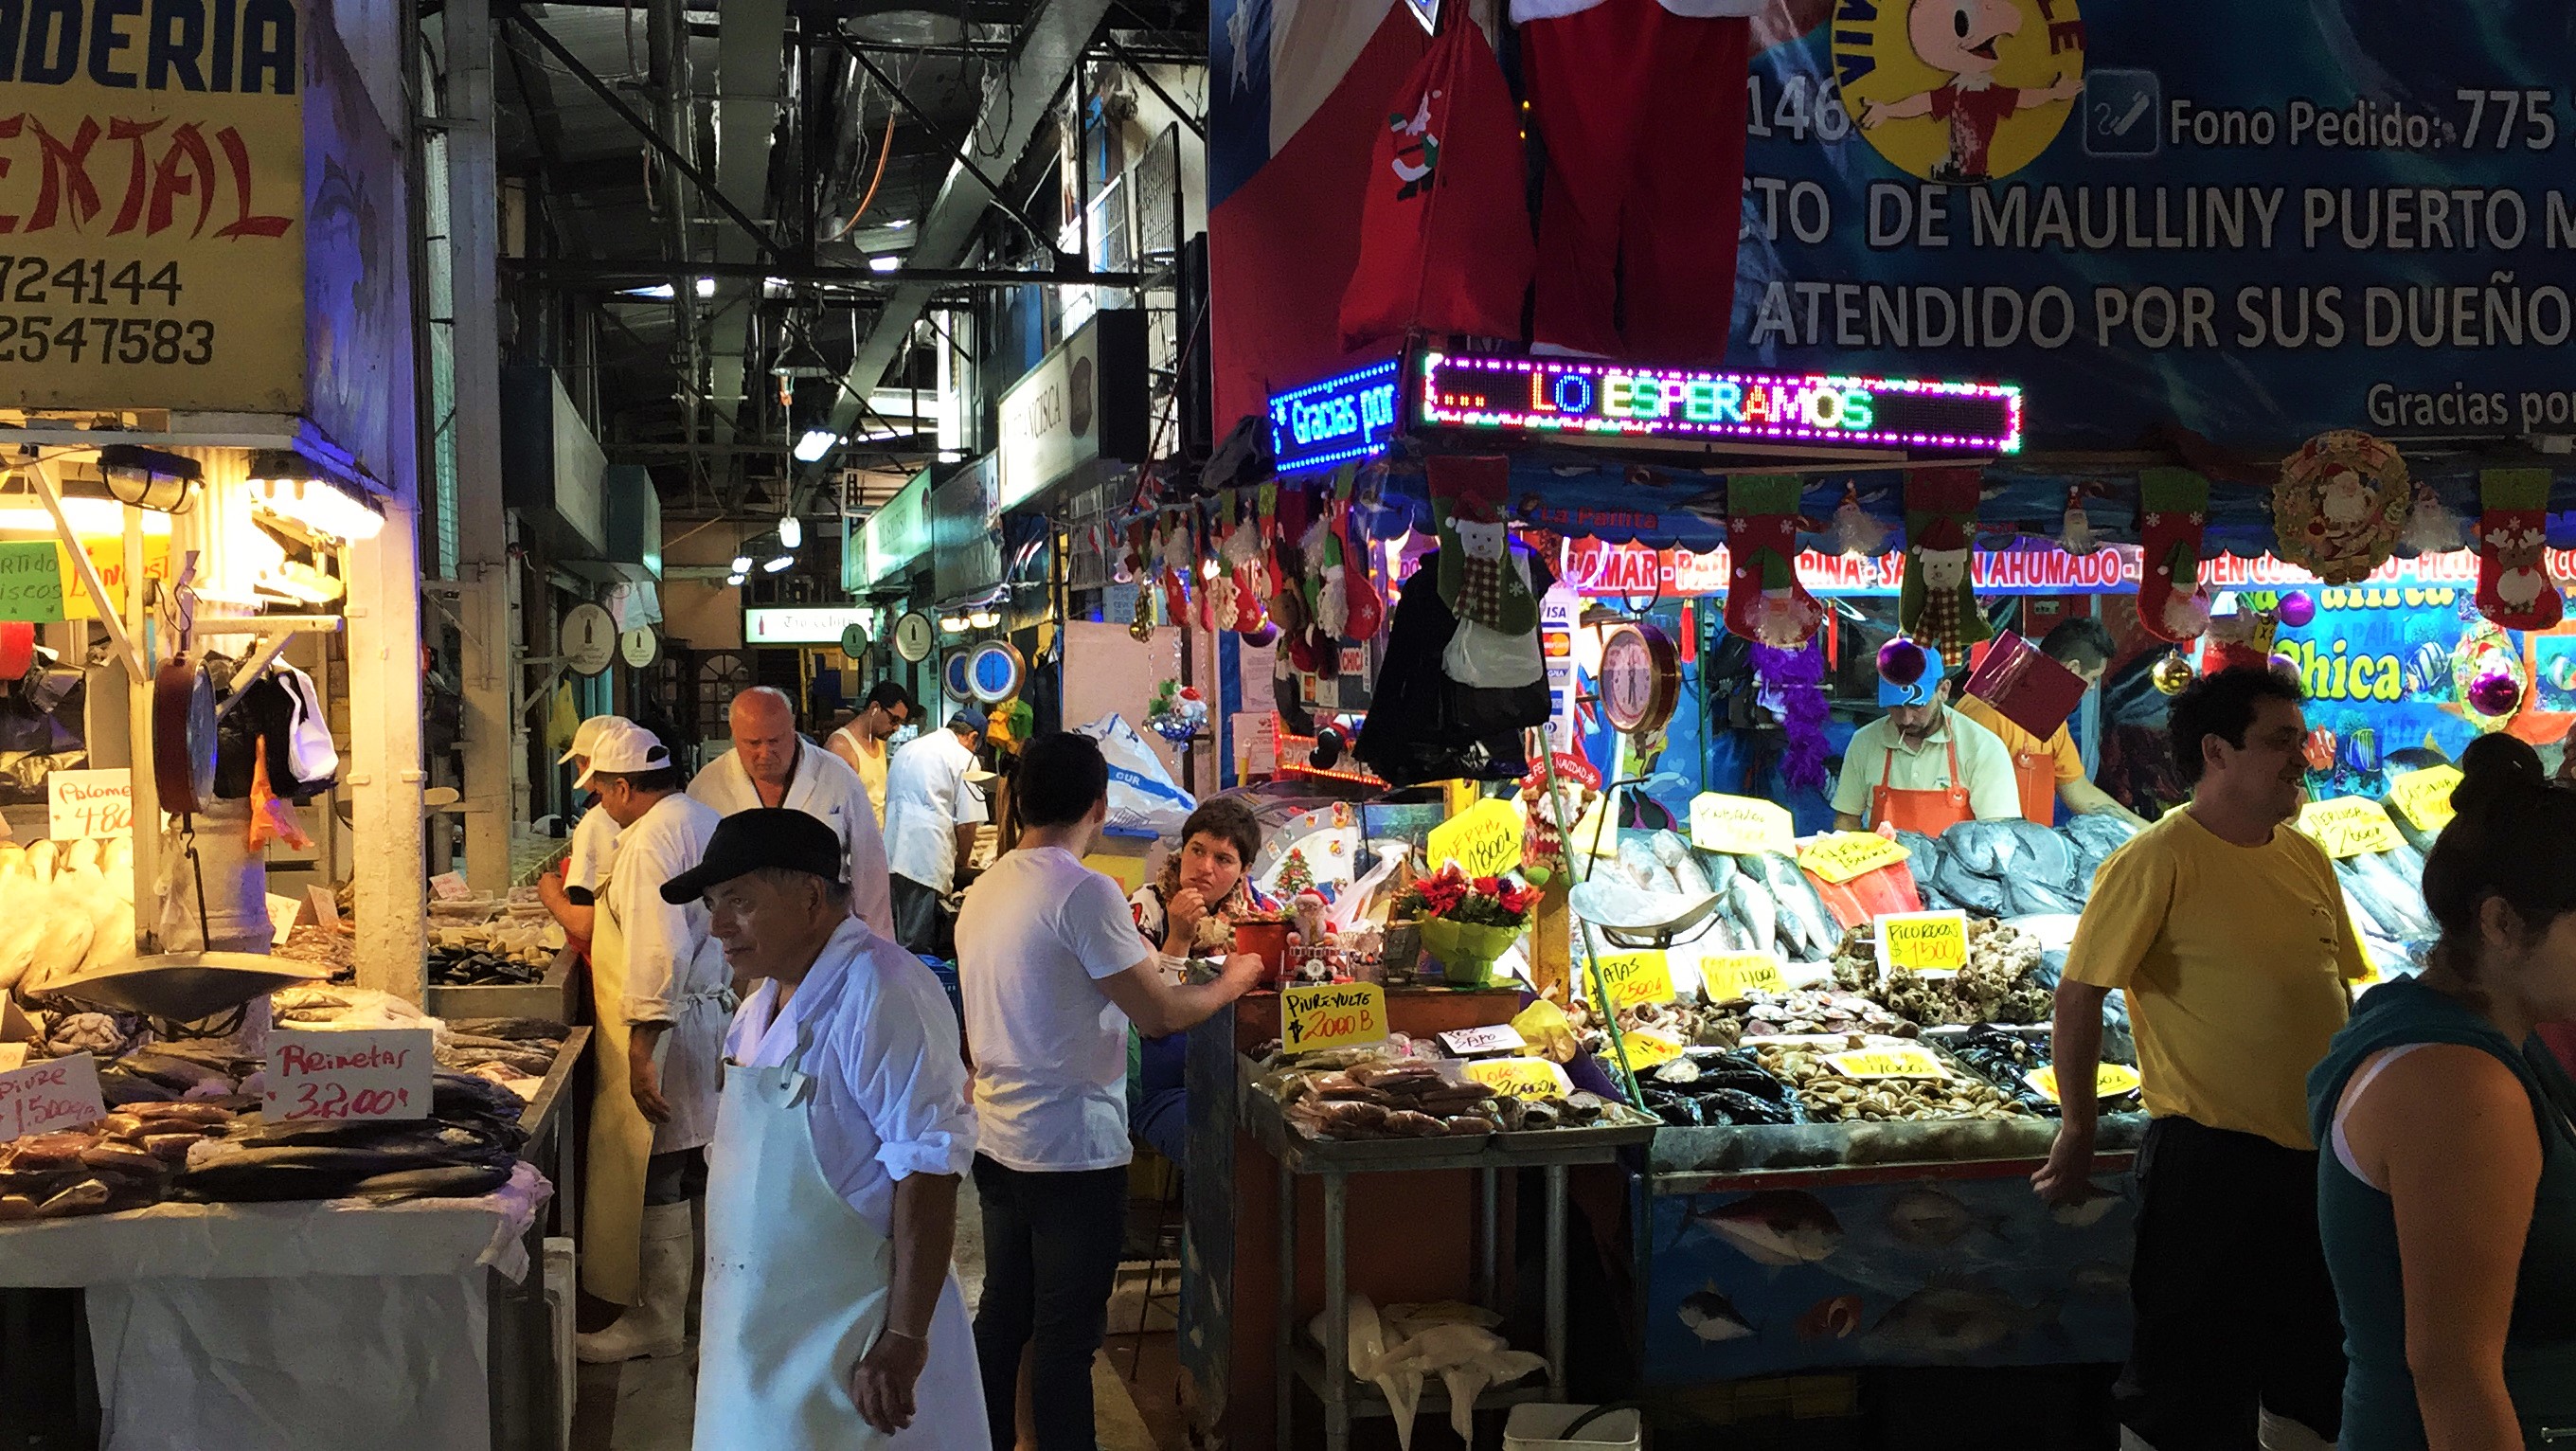 Mercado Central - Feira de Peixes e Frutos do Mar